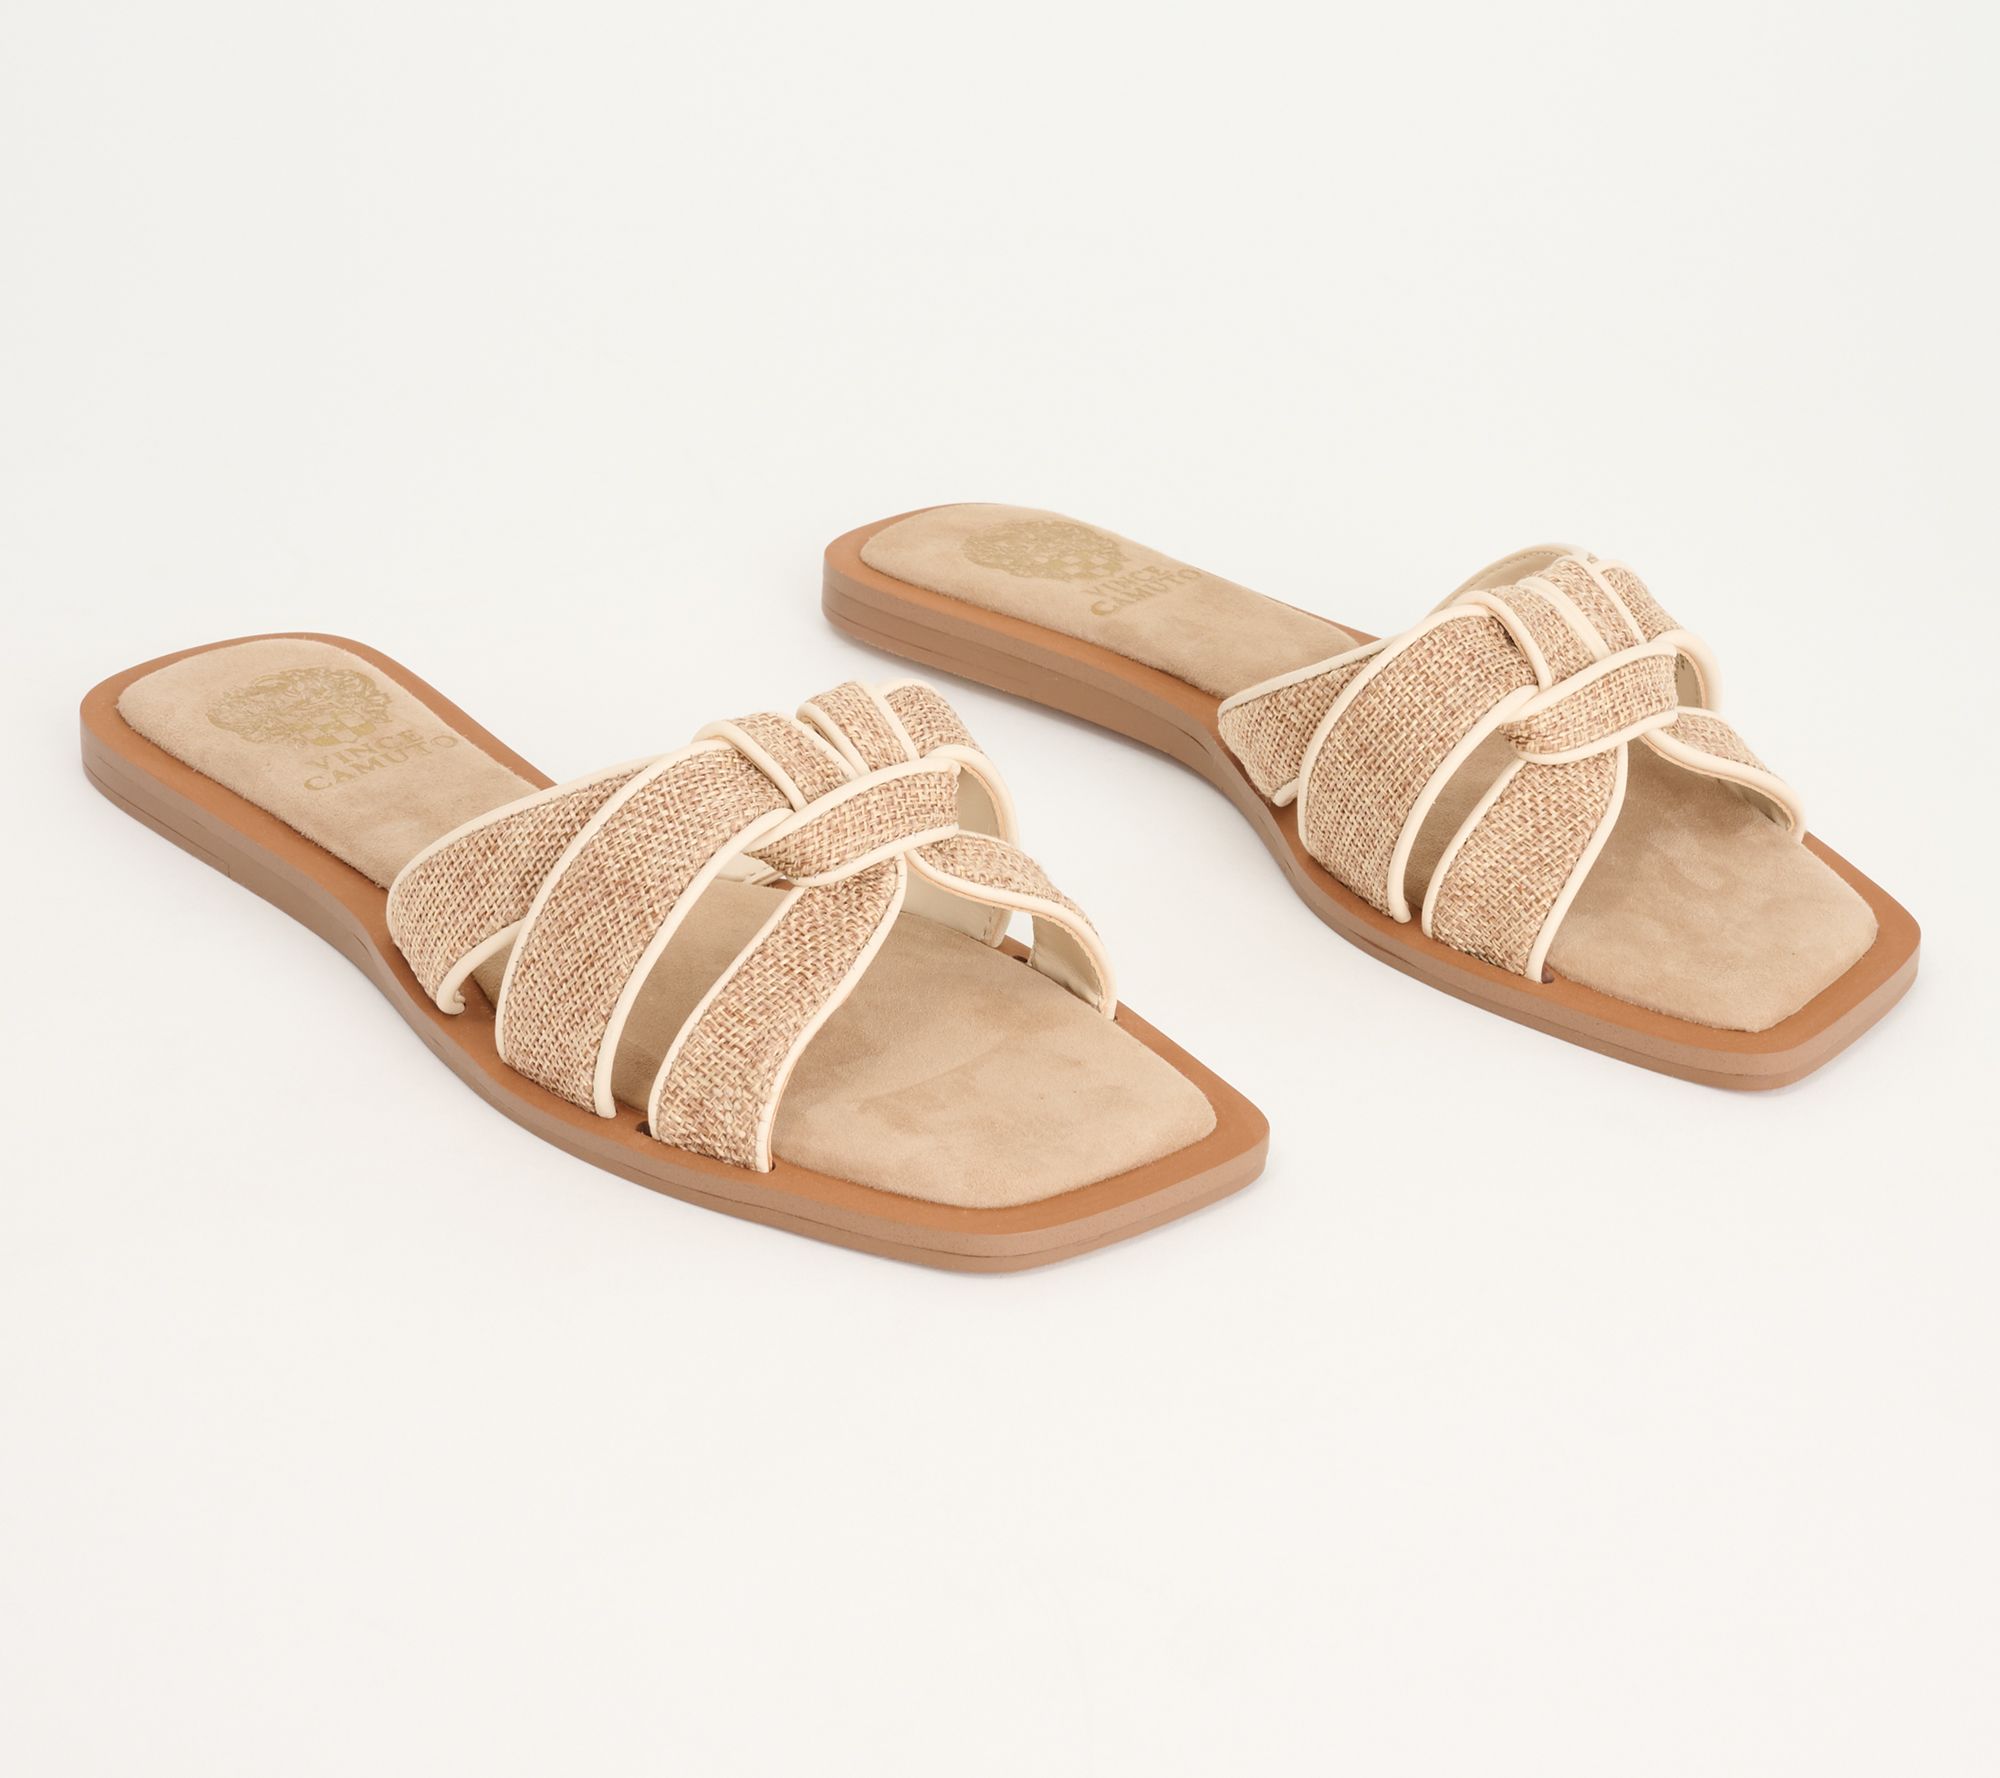 Sandals Designer By Frye Size: 9